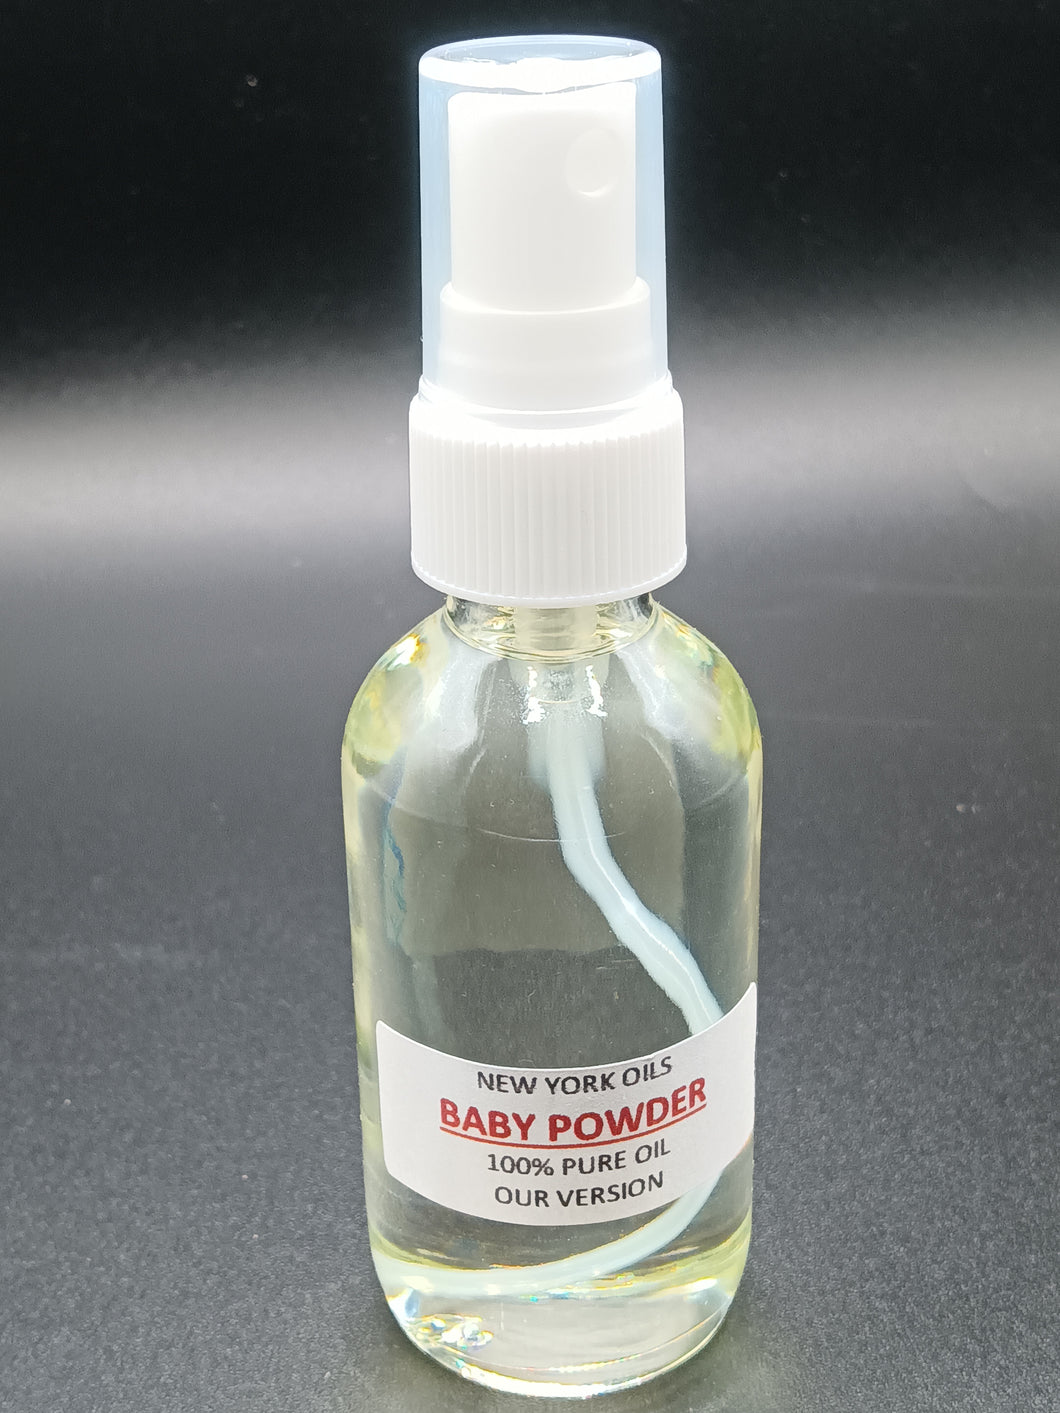 Baby Powder Body Spray